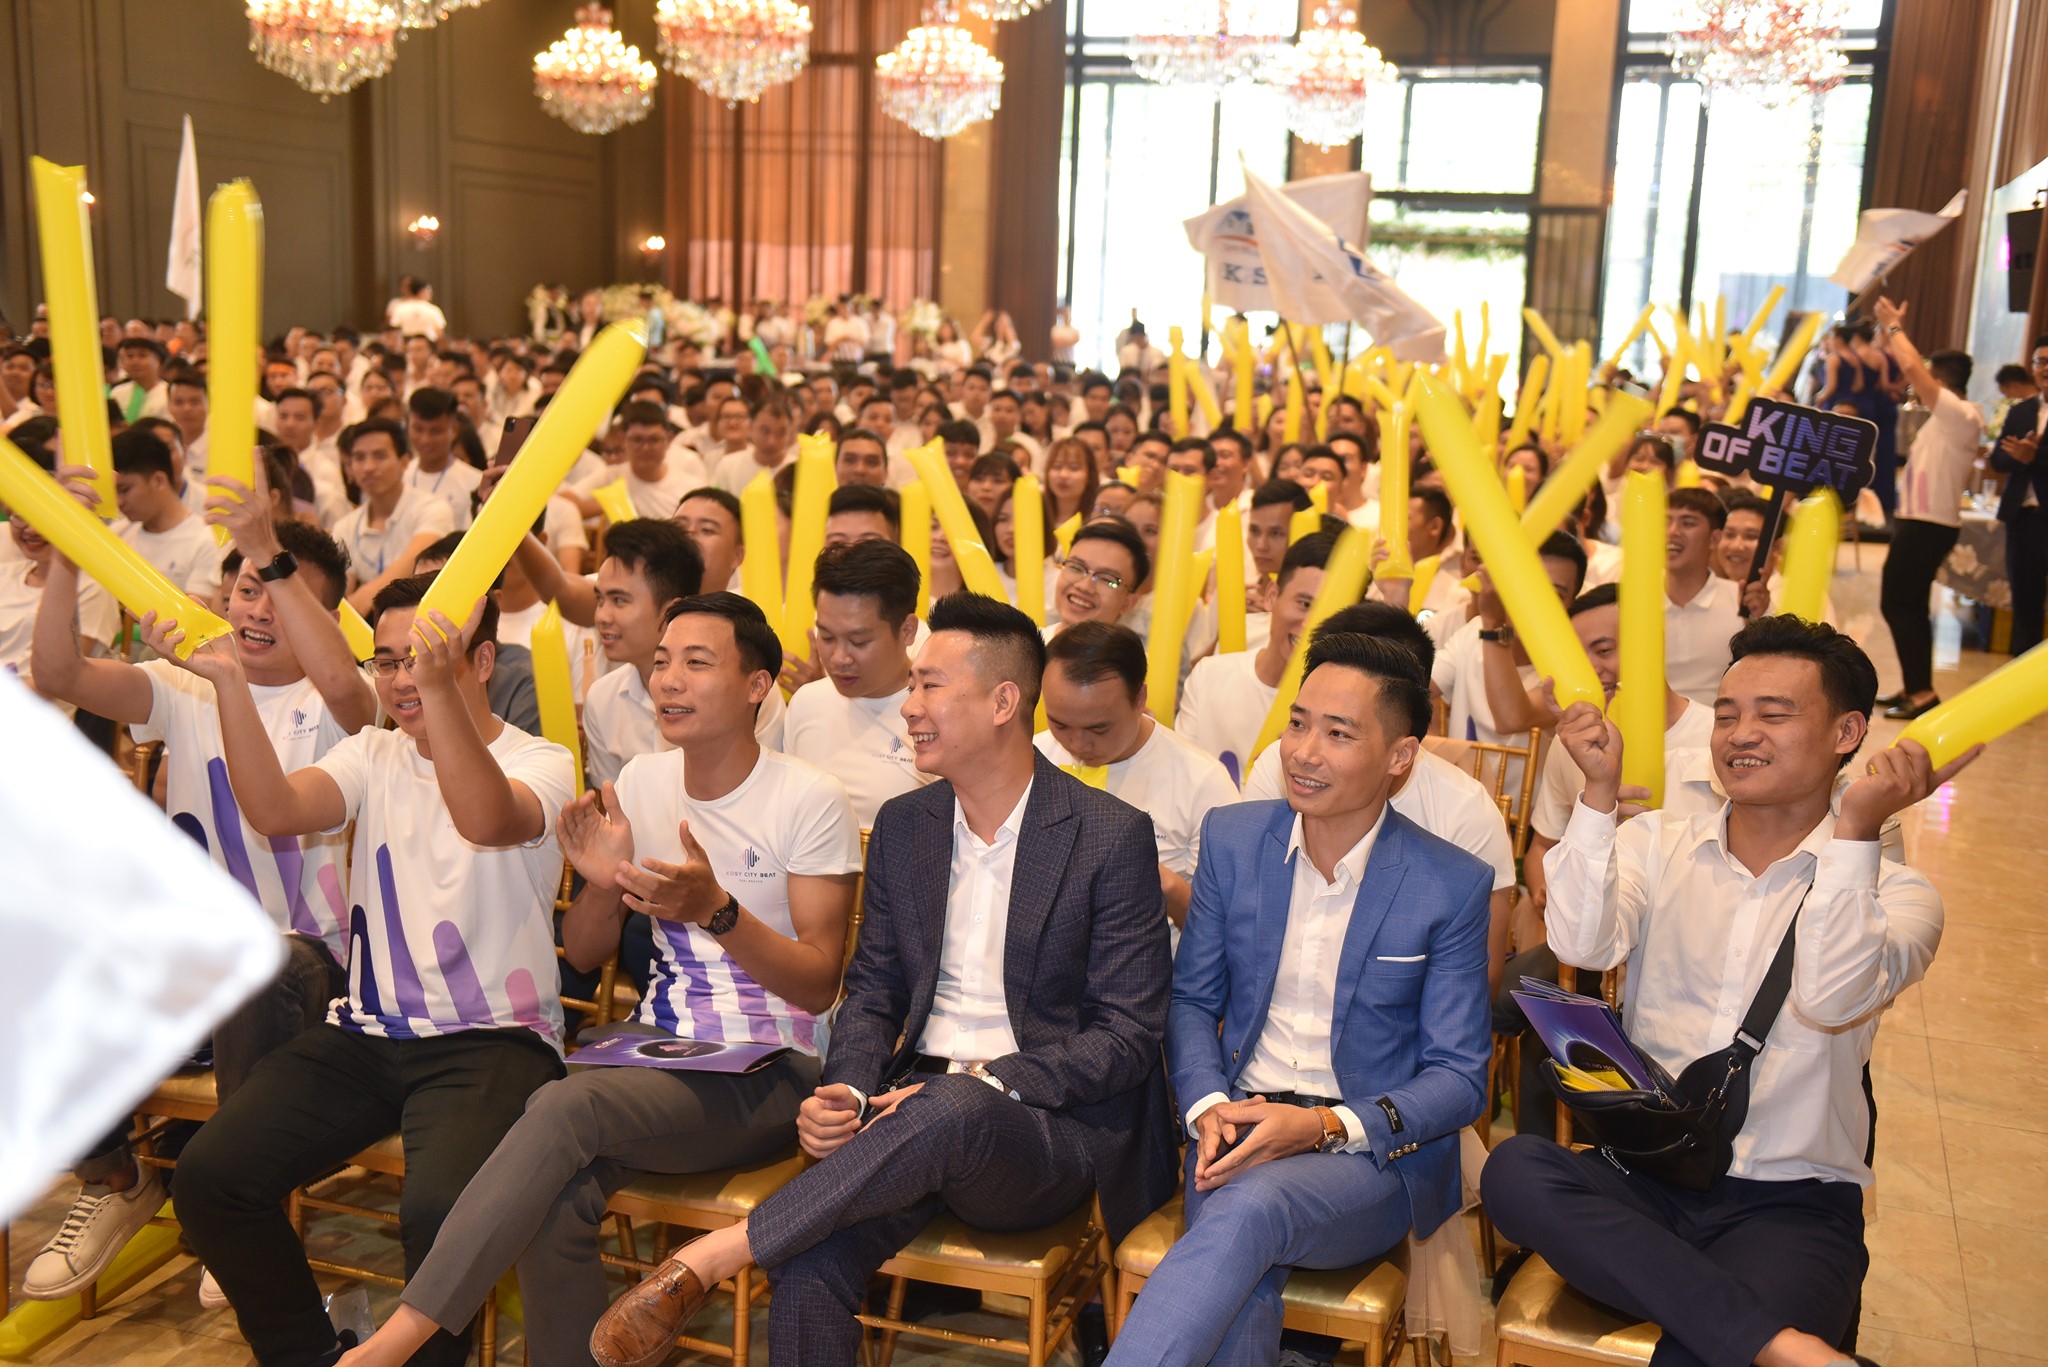 Lễ Kick-Off dự án Kosy City Beat Thai Nguyen 23/11/2020